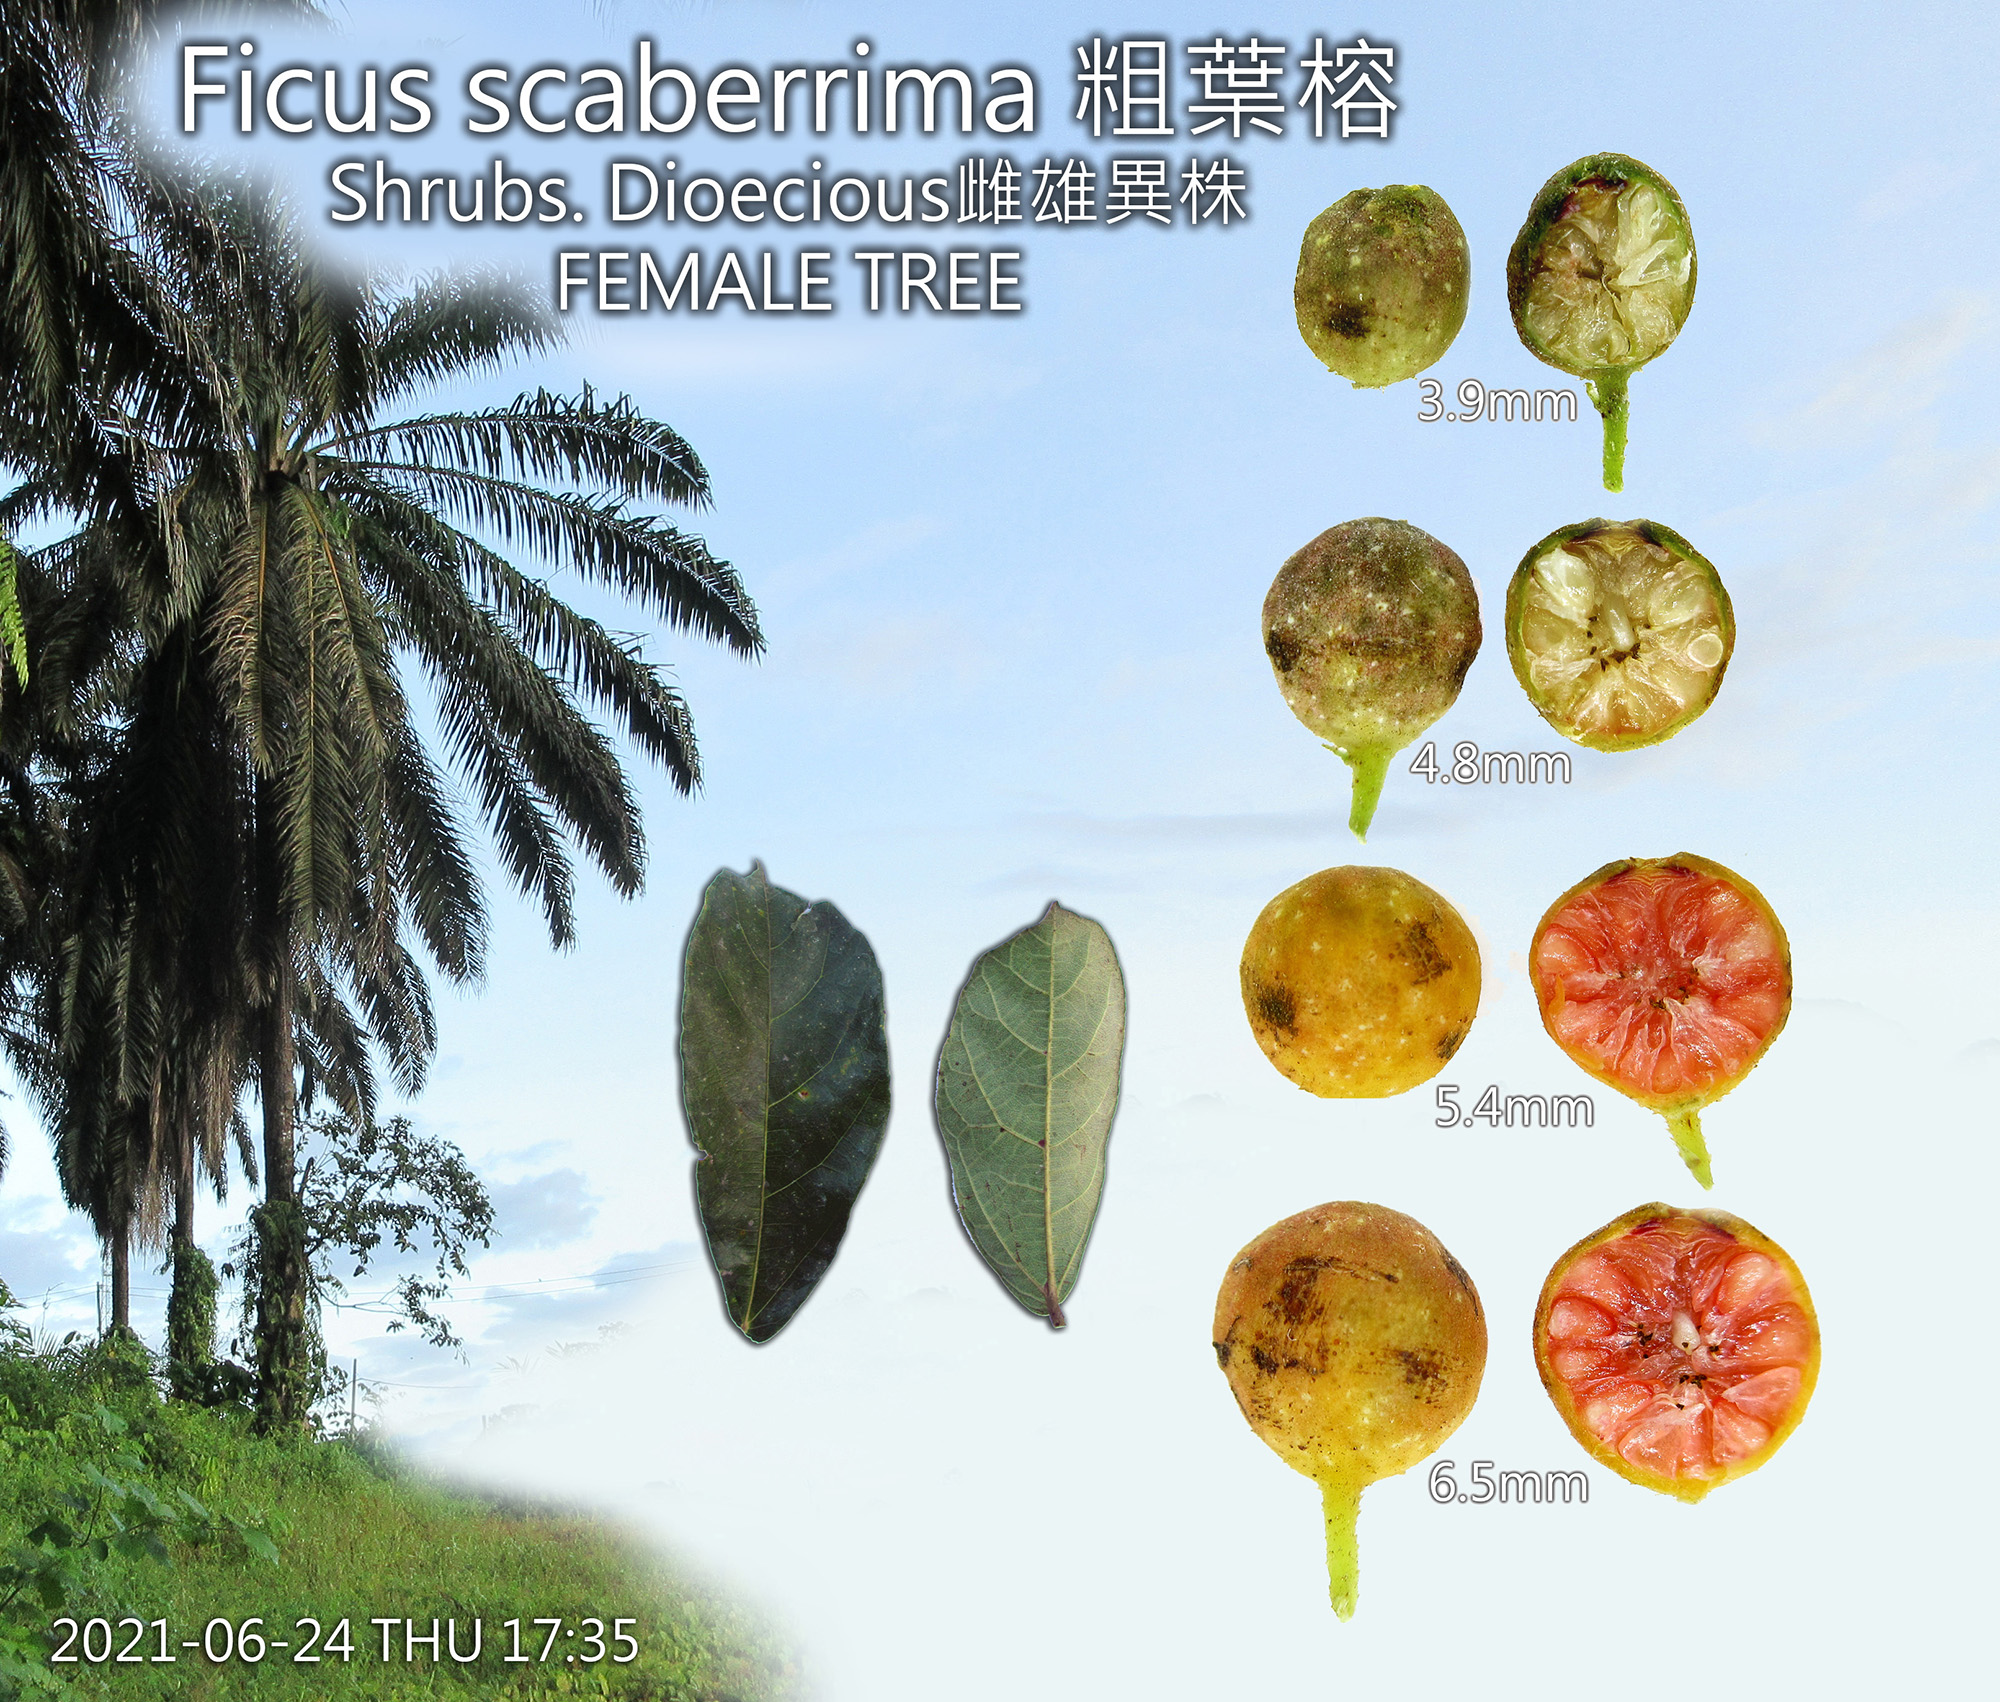 Ficus scaberrima 粗葉榕